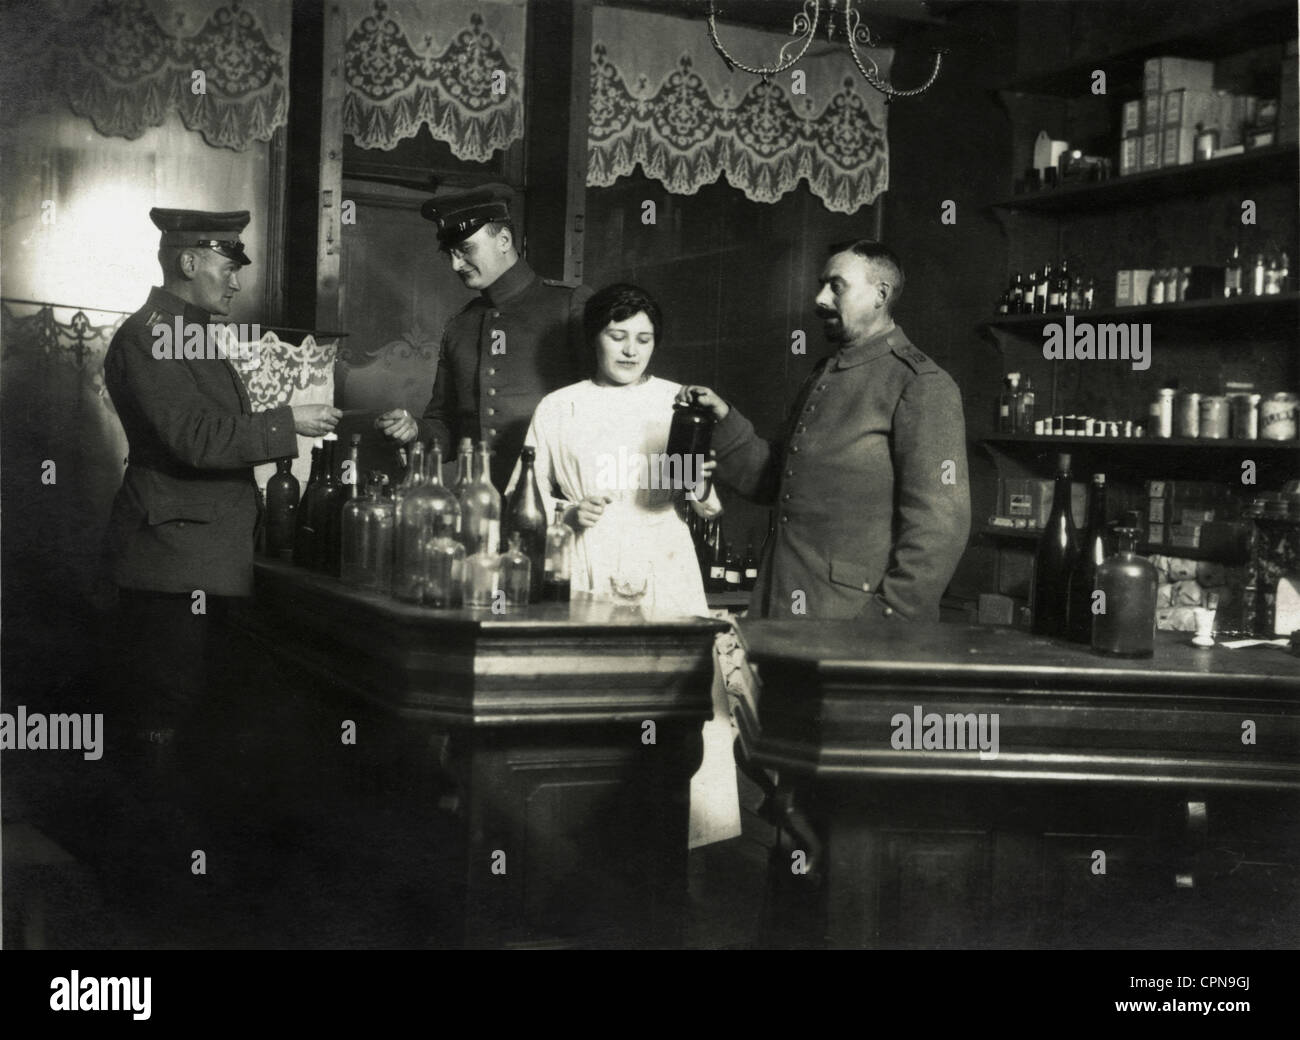 Eventos, primera Guerra Mundial / WWI, Alemania, soldados alemanes en una farmacia, alrededor de 1915, Derechos adicionales-Clearences-no disponible Foto de stock